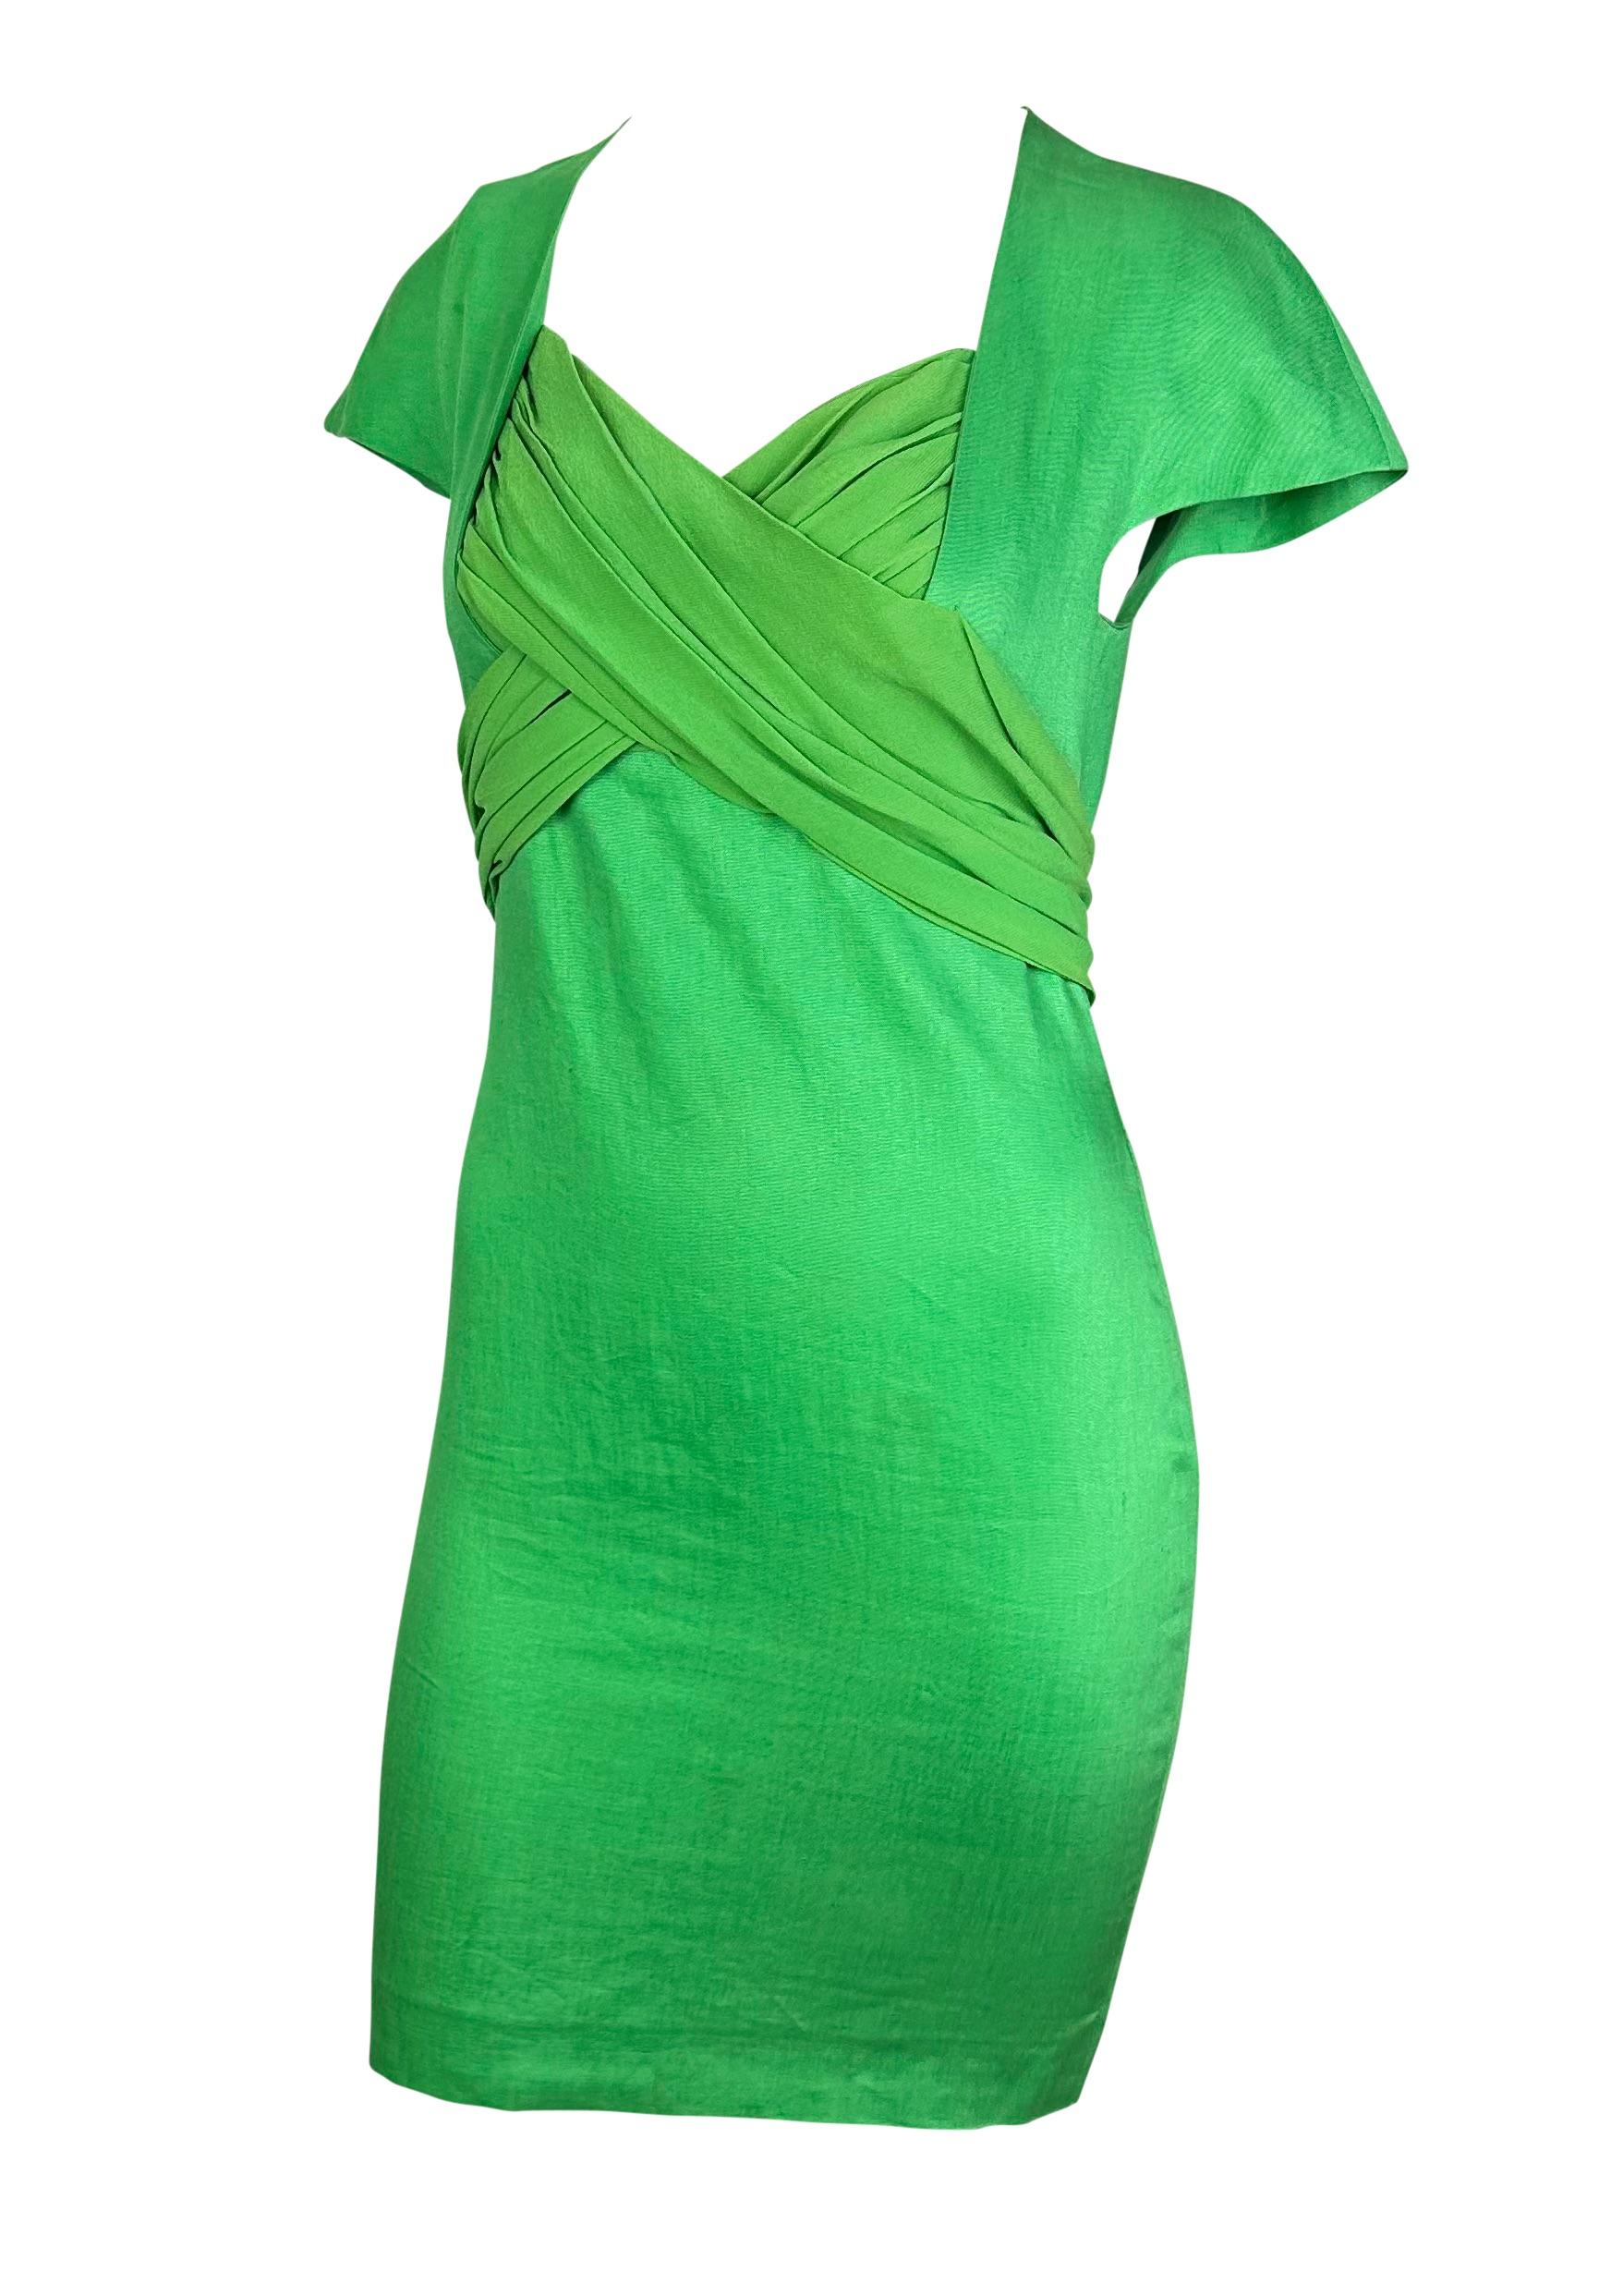 Voici une fabuleuse robe Gianni Versace Couture en lin vert vif, conçue par Gianni Versace. Présentée pour la première fois lors du défilé printemps-été 1989, cette mini robe vibrante est dotée de manches en forme de pétales et d'une mousseline